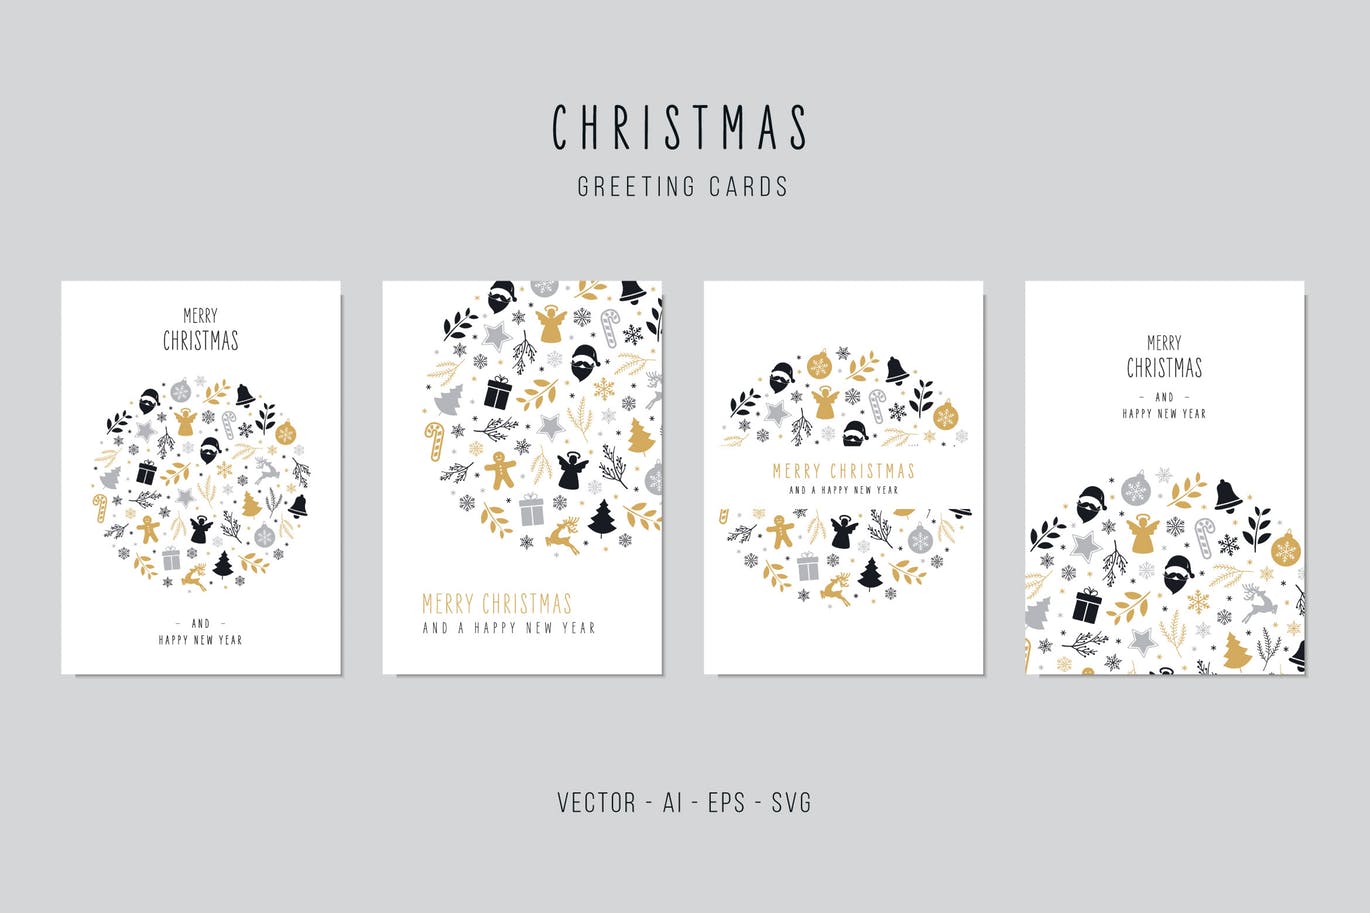 创意圣诞节元素图案组合圆形圣诞节矢量贺卡设计模板 Christmas Greeting Vector Card Set插图